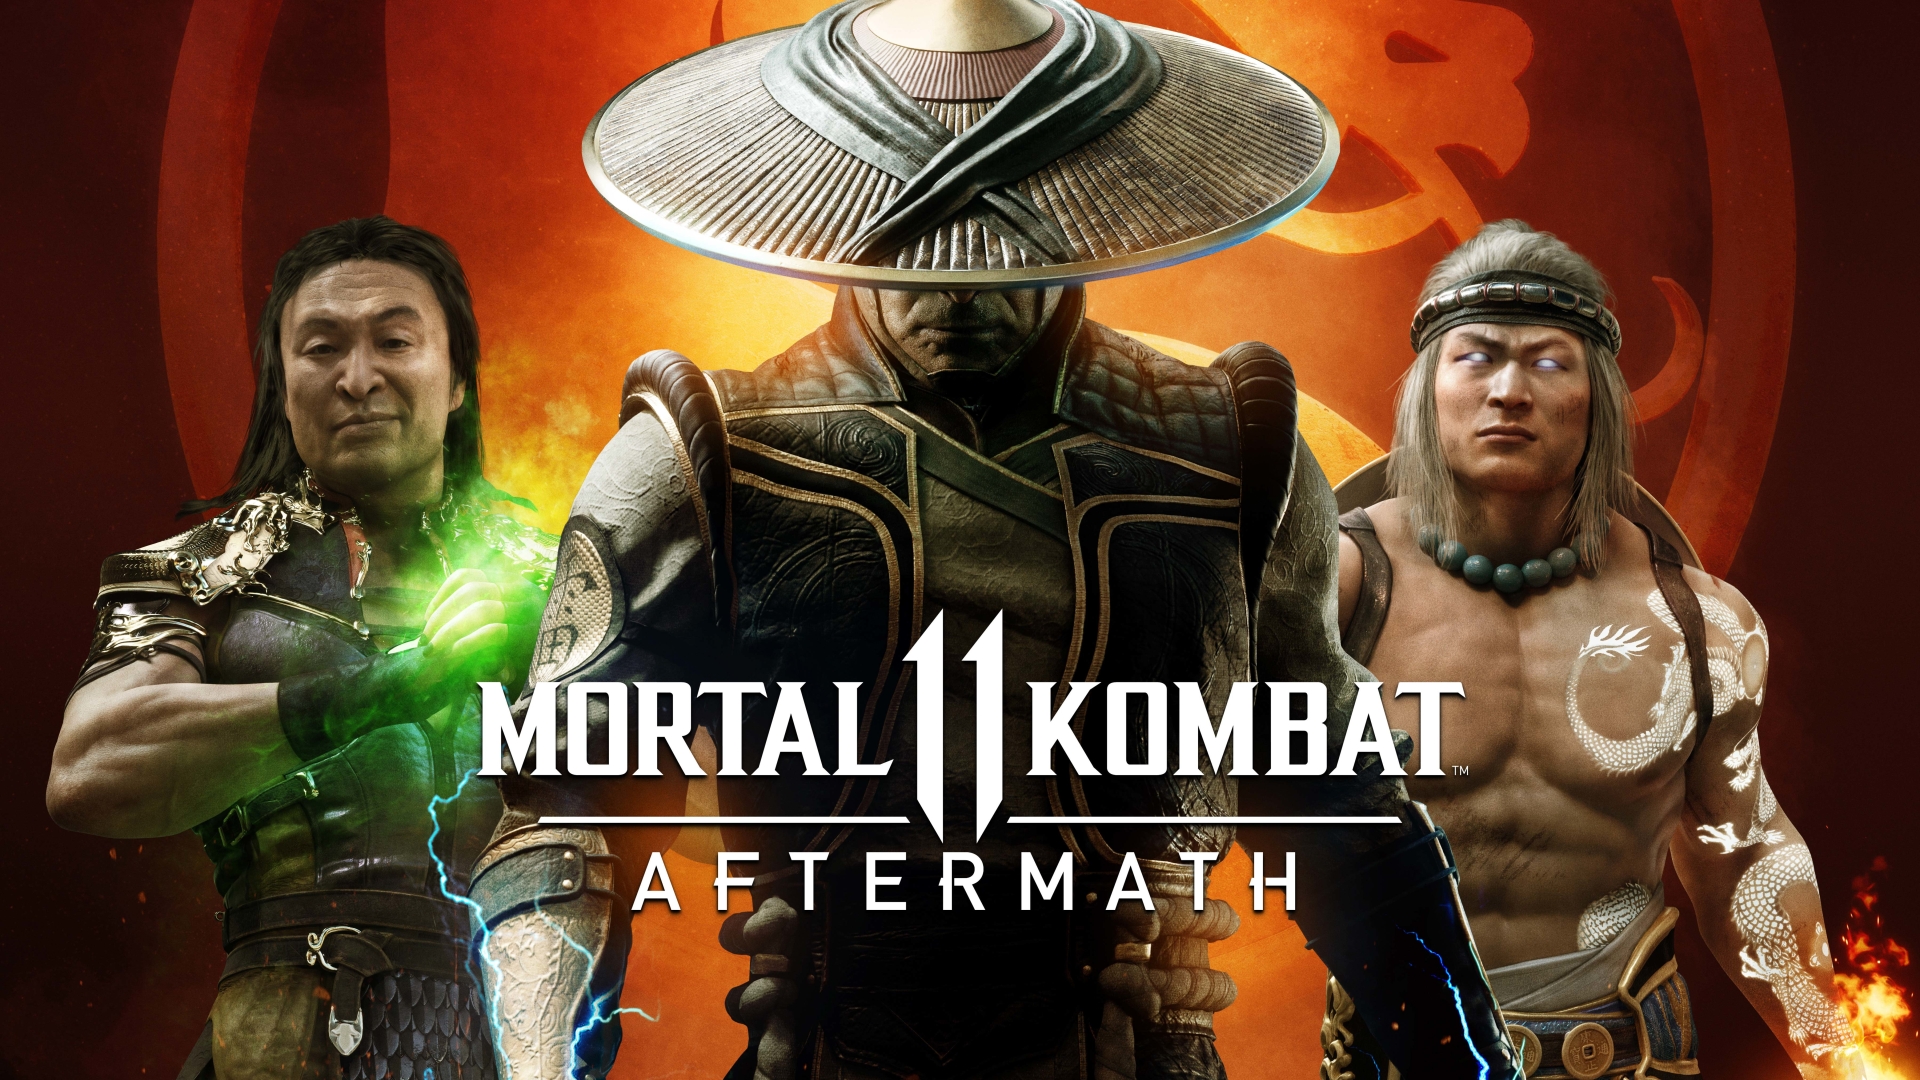 download mortal kombat 11 ultimate